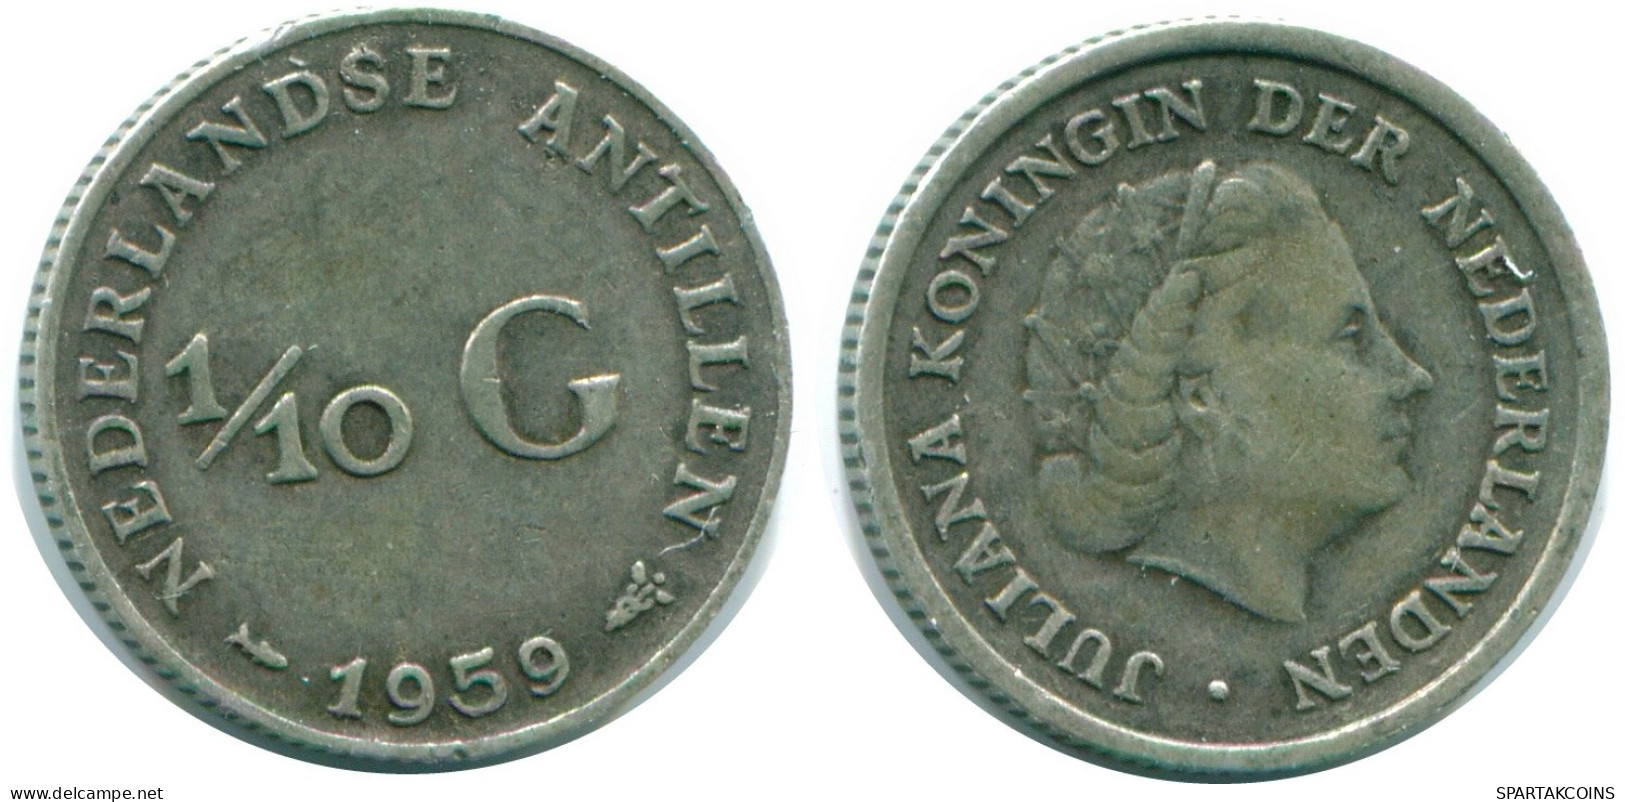 1/10 GULDEN 1959 NIEDERLÄNDISCHE ANTILLEN SILBER Koloniale Münze #NL12243.3.D.A - Antilles Néerlandaises